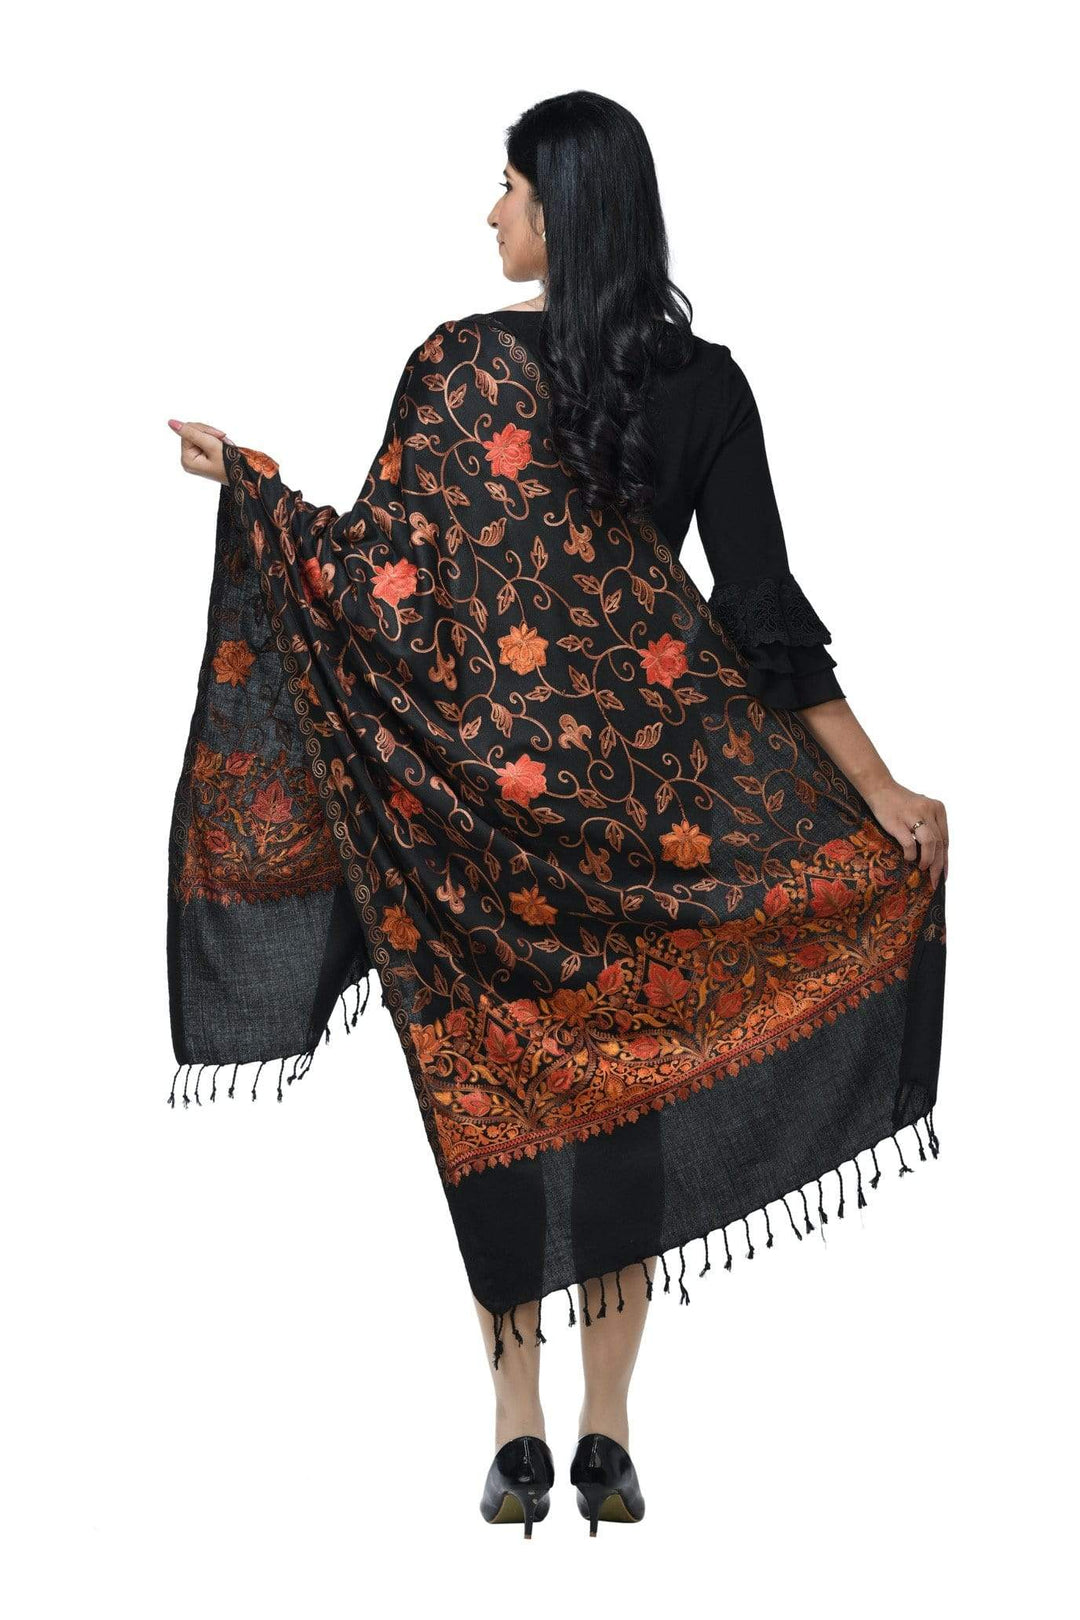 Pashwool 70x200 Pashwool Womens Kashmiri Embroidery Stole, Woollen, Soft and Warm, Black